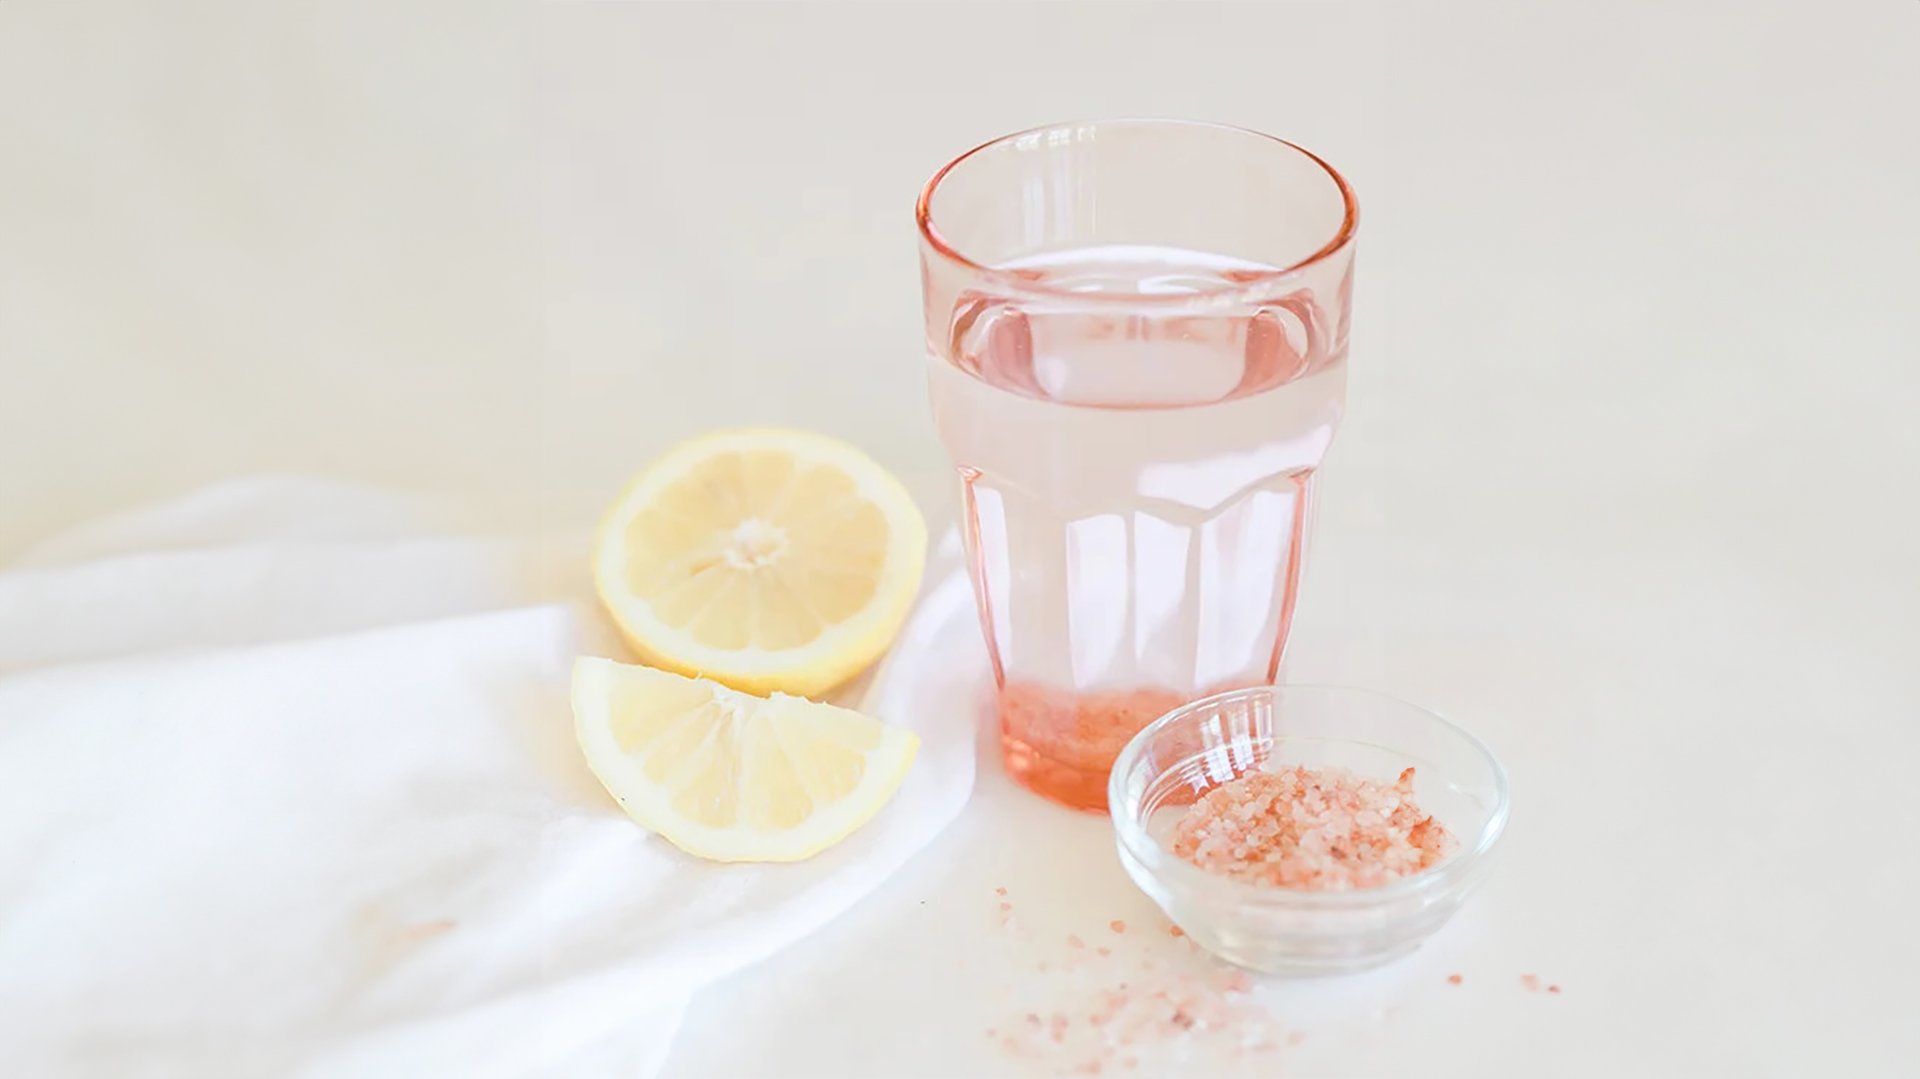 Tại sao bạn nên uống nước muối hồng vào mỗi buổi sáng?